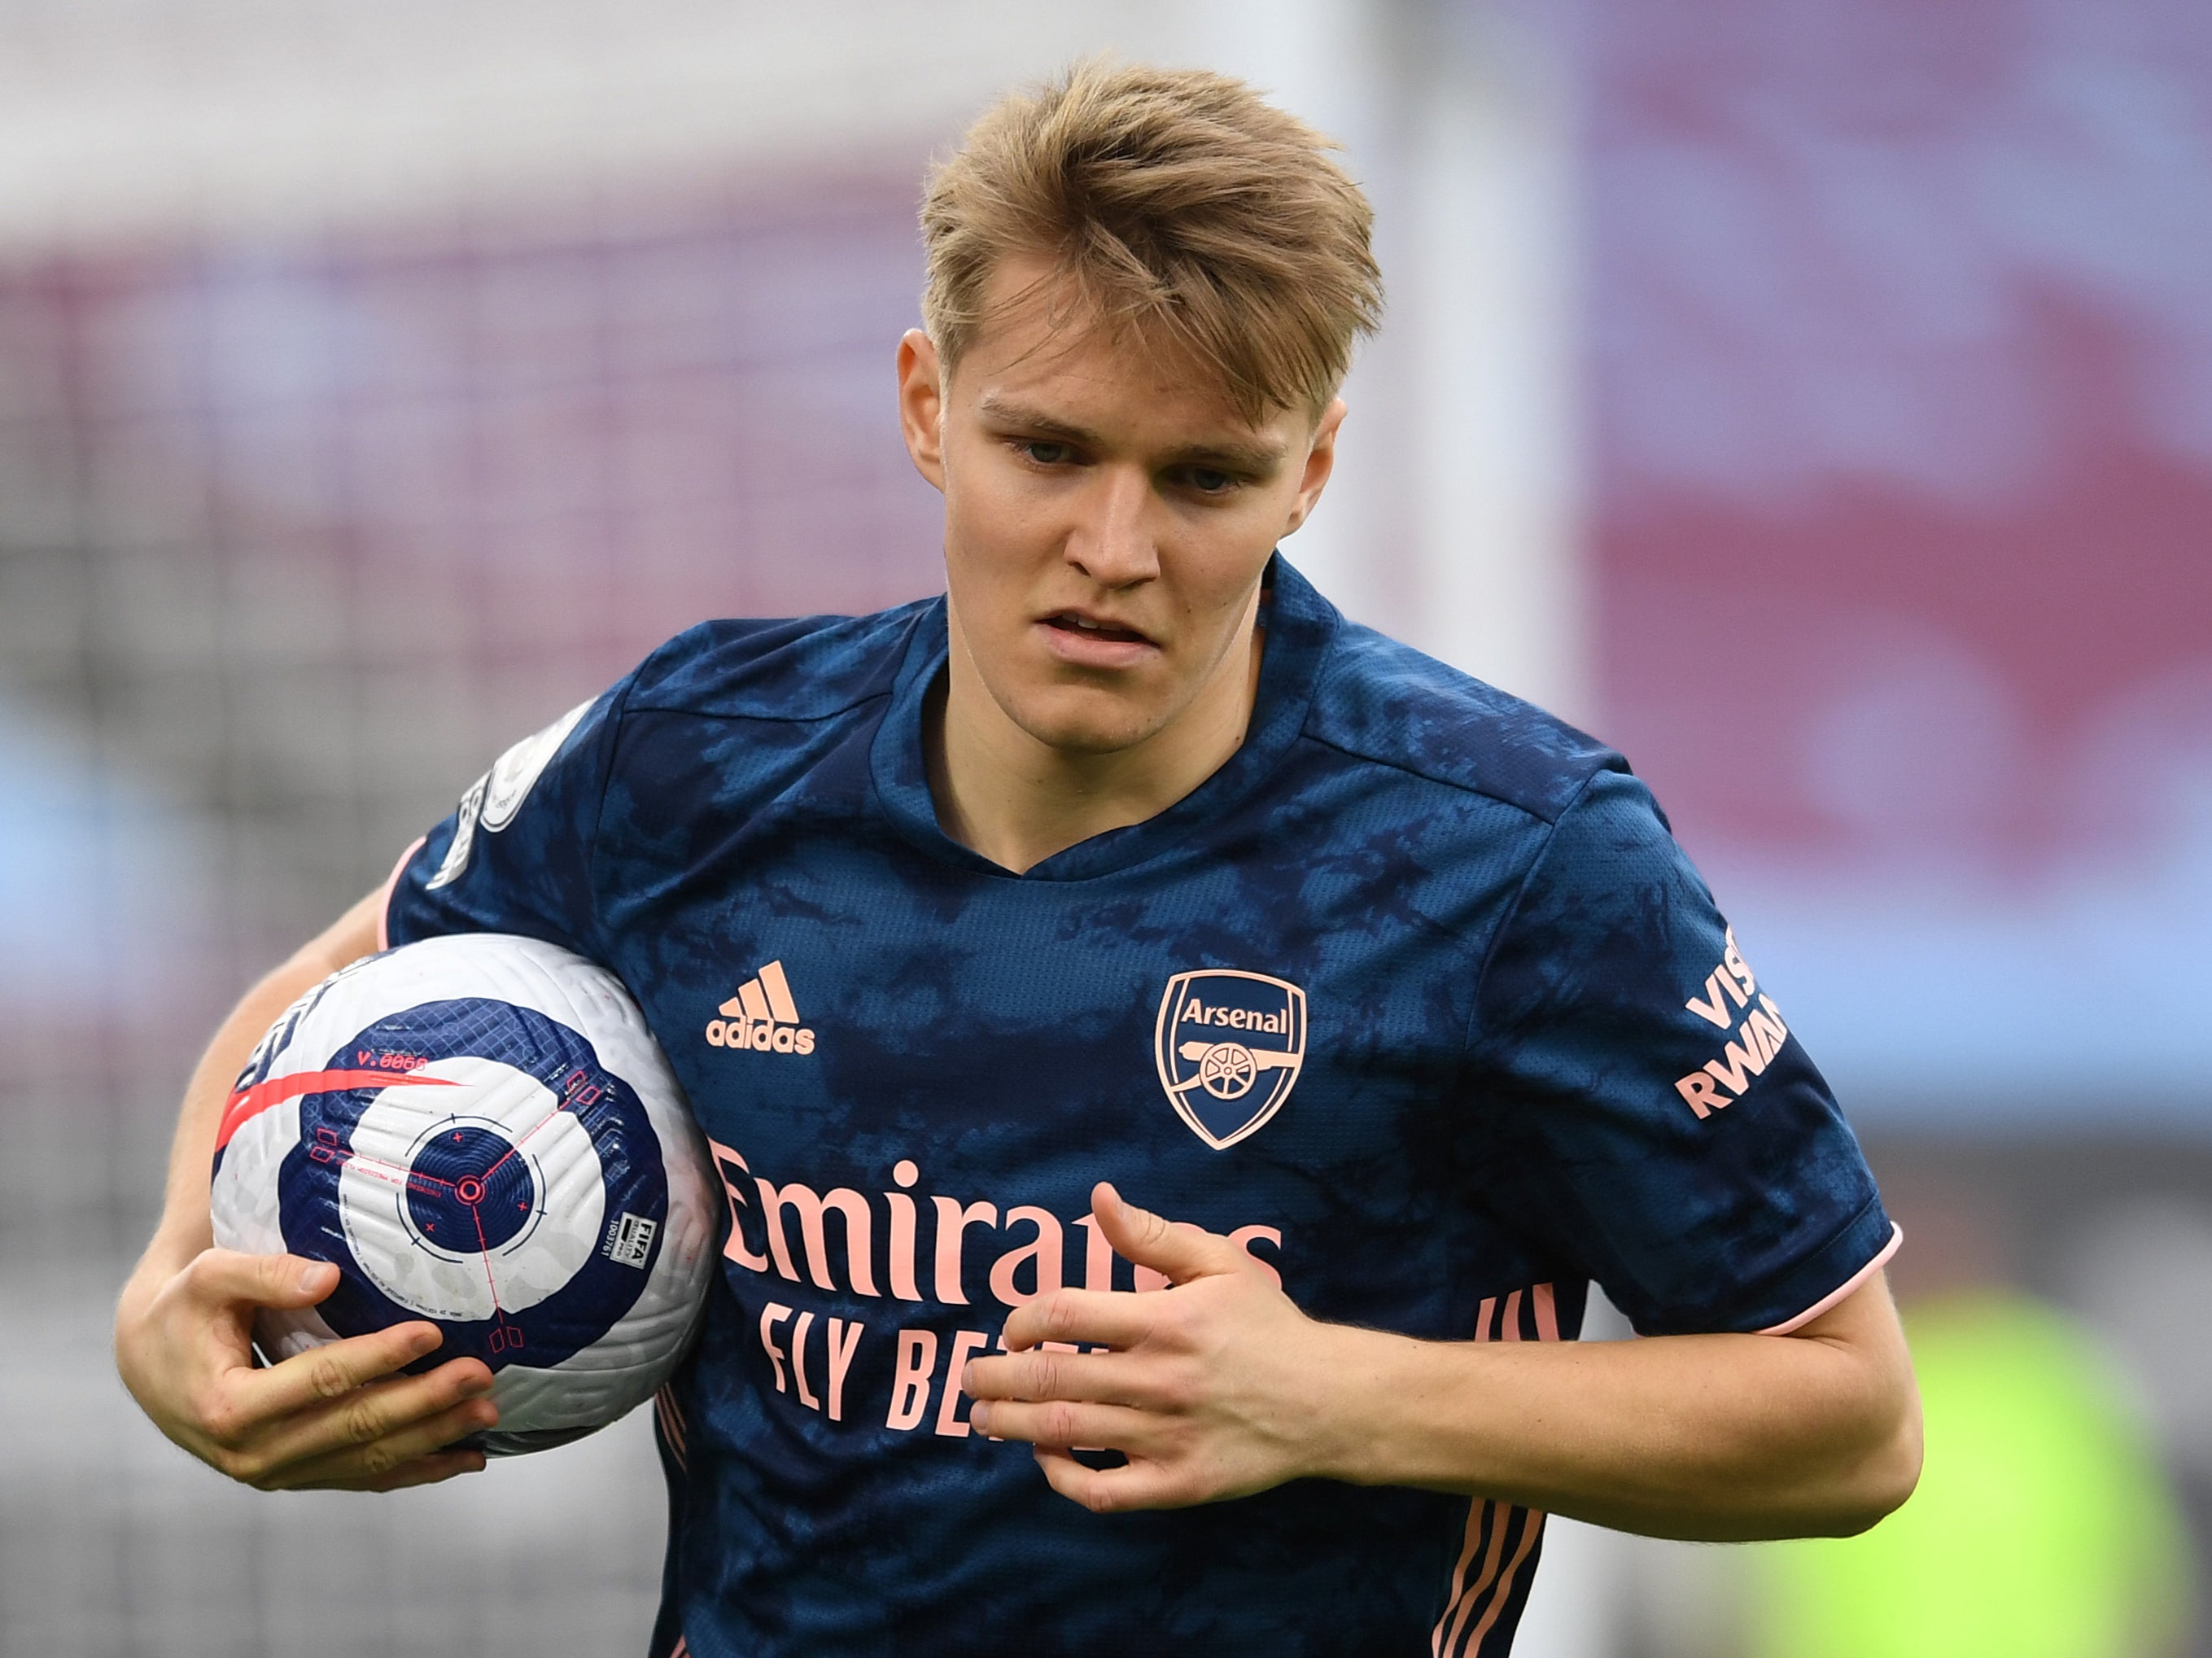 Arsenal’s on-loan midfielder Martin Odegaard